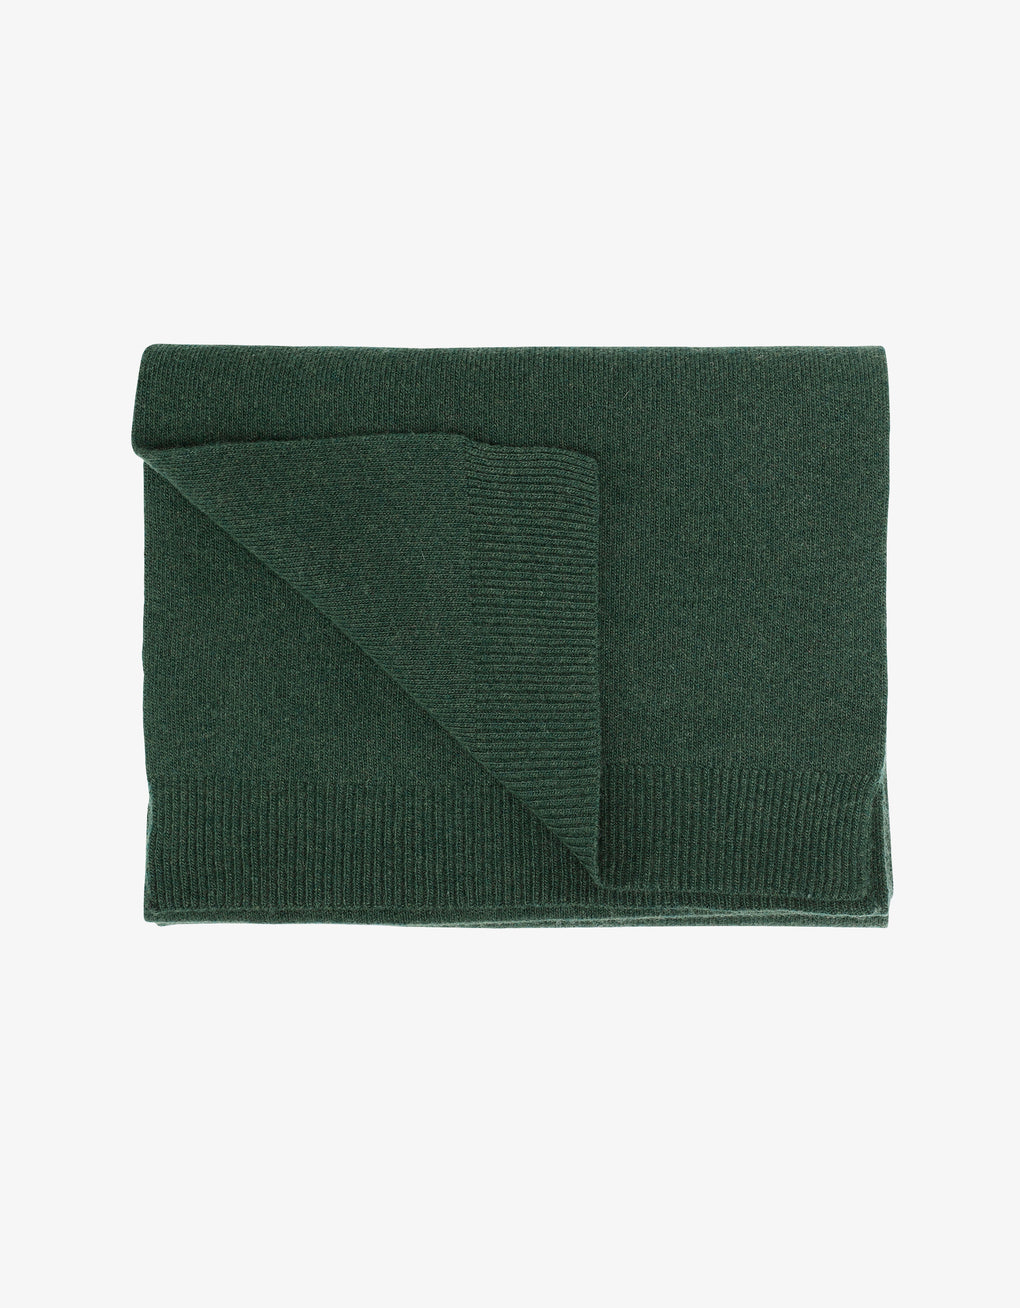 Merino wool scarf - emerald green